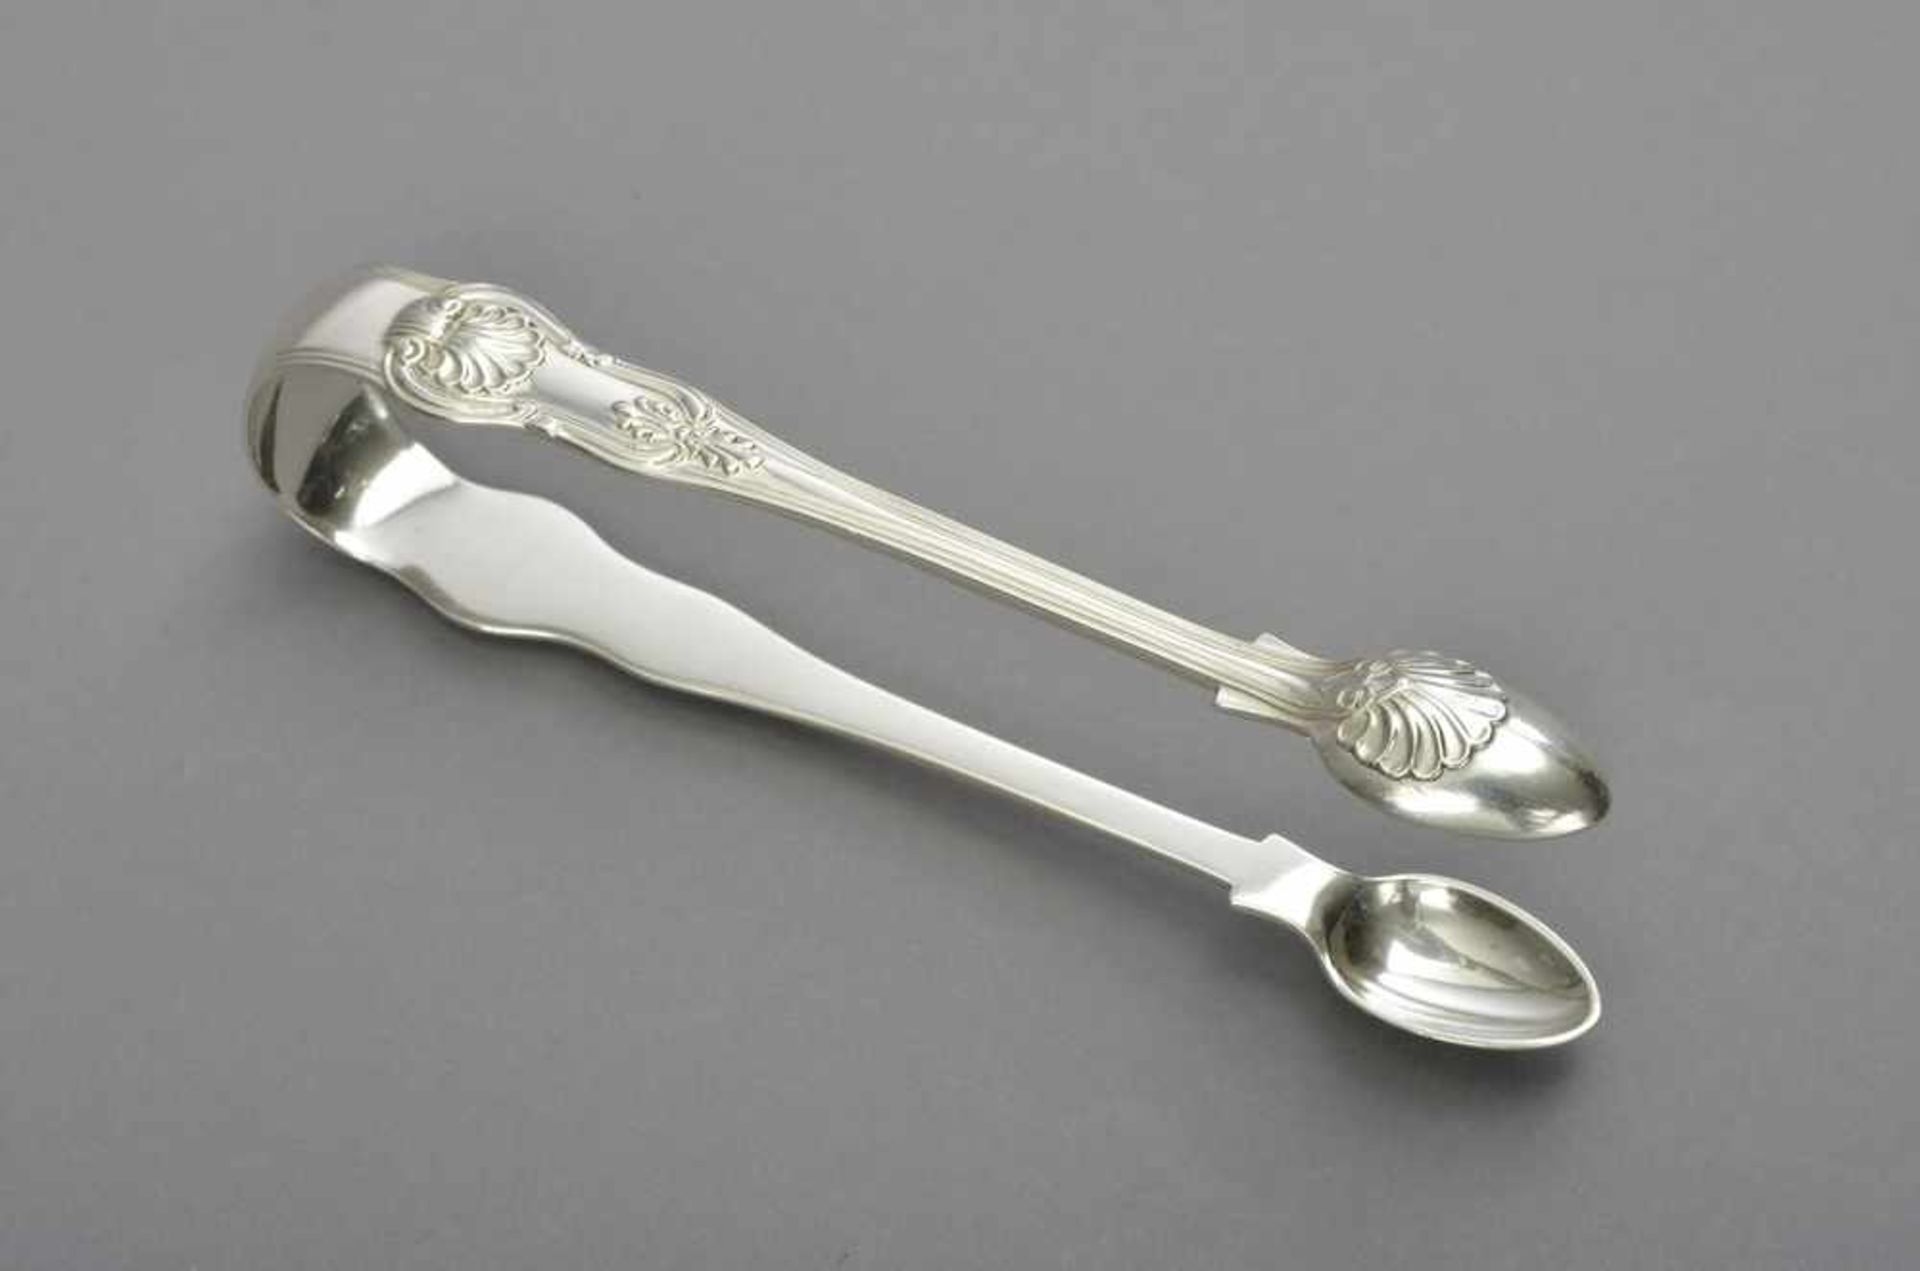 Englische Zuckerzange mit Muschel Dekor, London 1833, MZ: William Eaton, Silber 925, 77g, L. 16cm